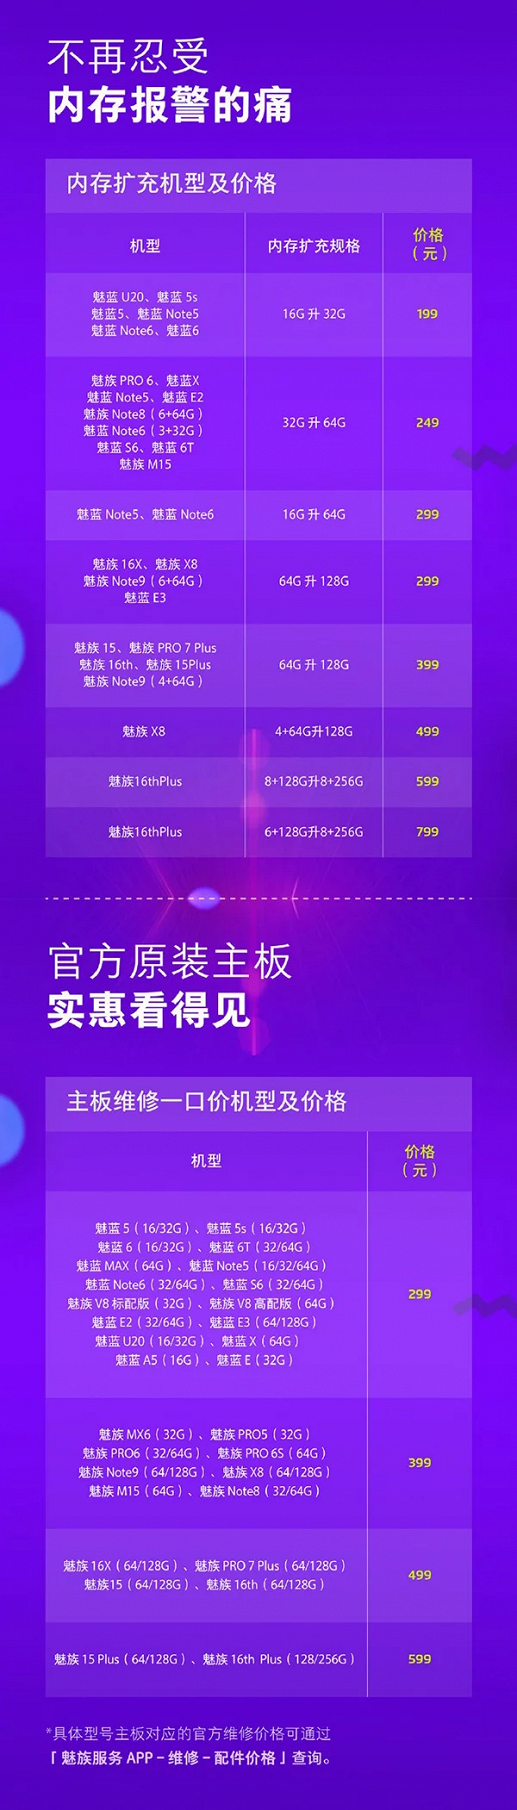 Meizu снова предлагает пользователям увеличить память смартфонов